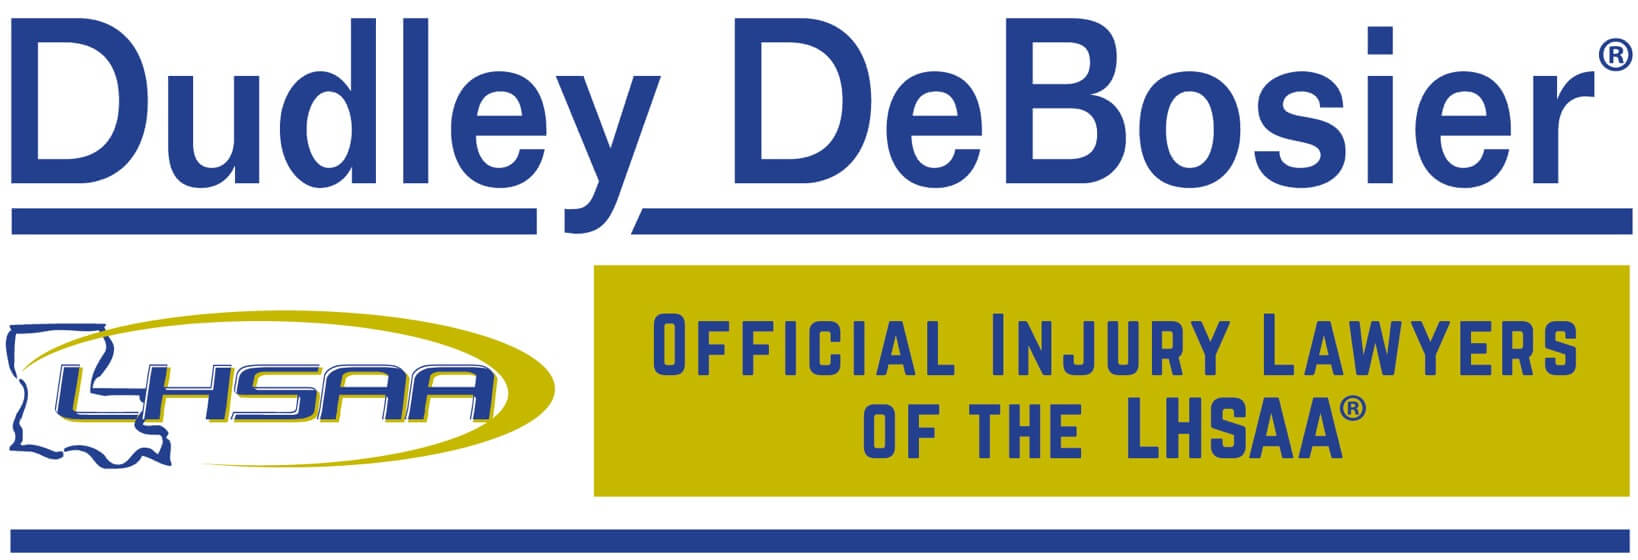 Dudley DeBosier LHSAA Logo